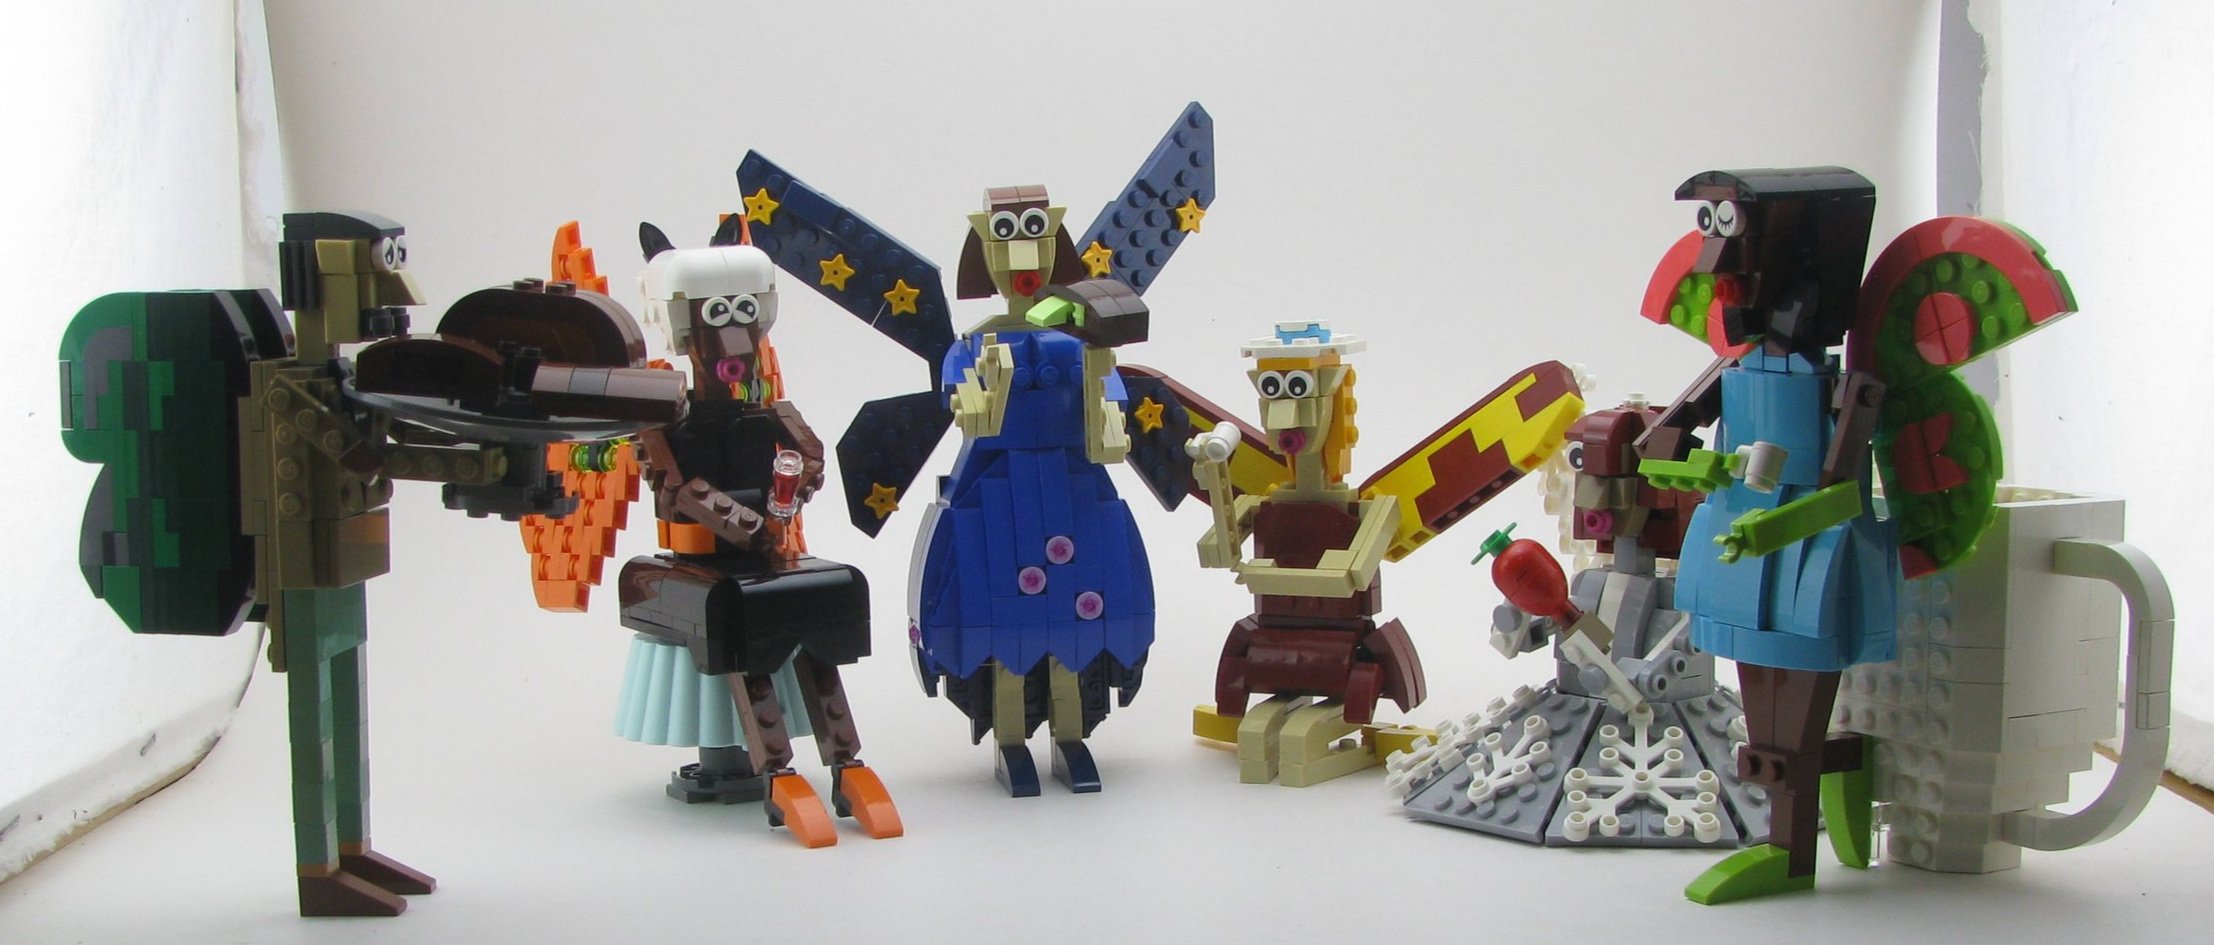 LEGO IDEAS - The Legend of Zelda Guardian (Minifigure Scale)